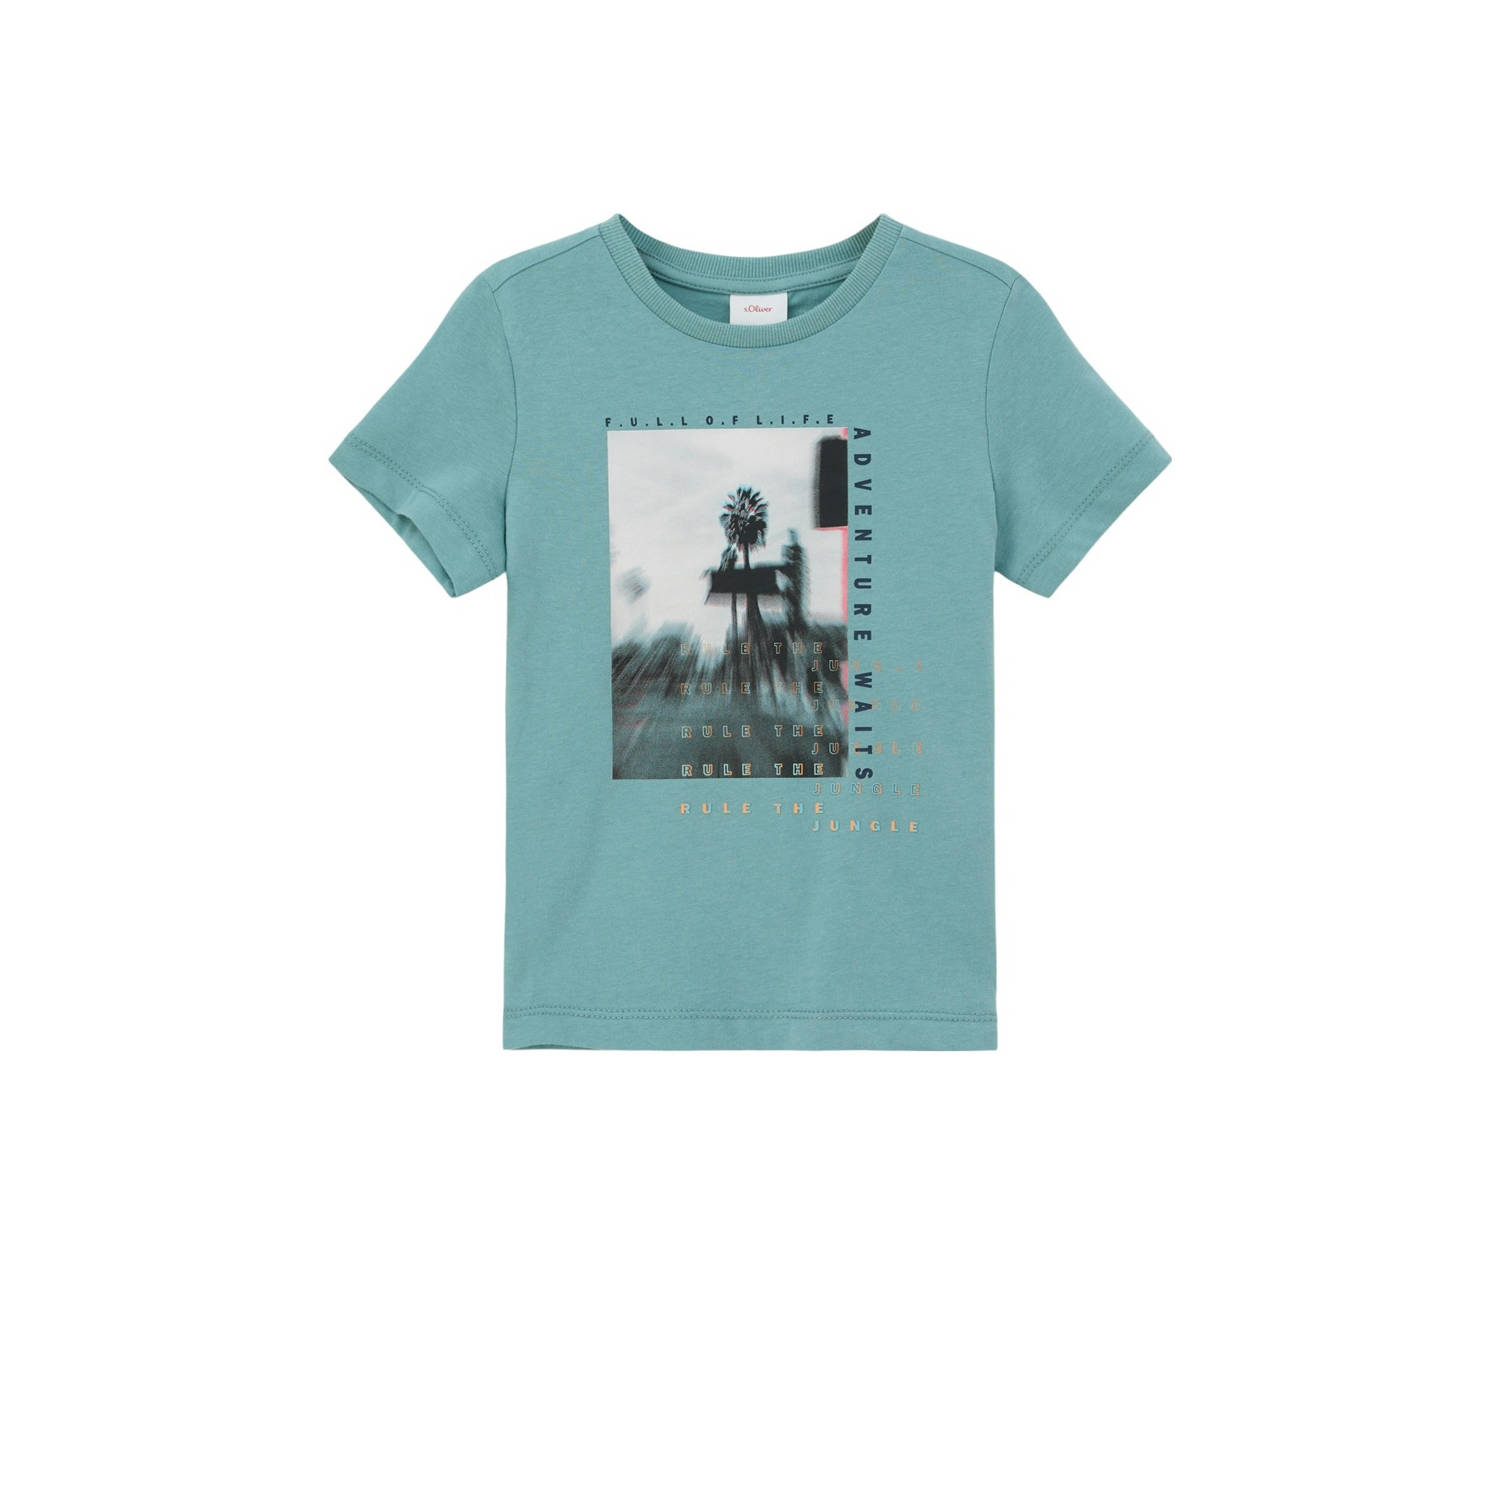 S.Oliver T-shirt met printopdruk turquoise Blauw Jongens Katoen Ronde hals 116 122